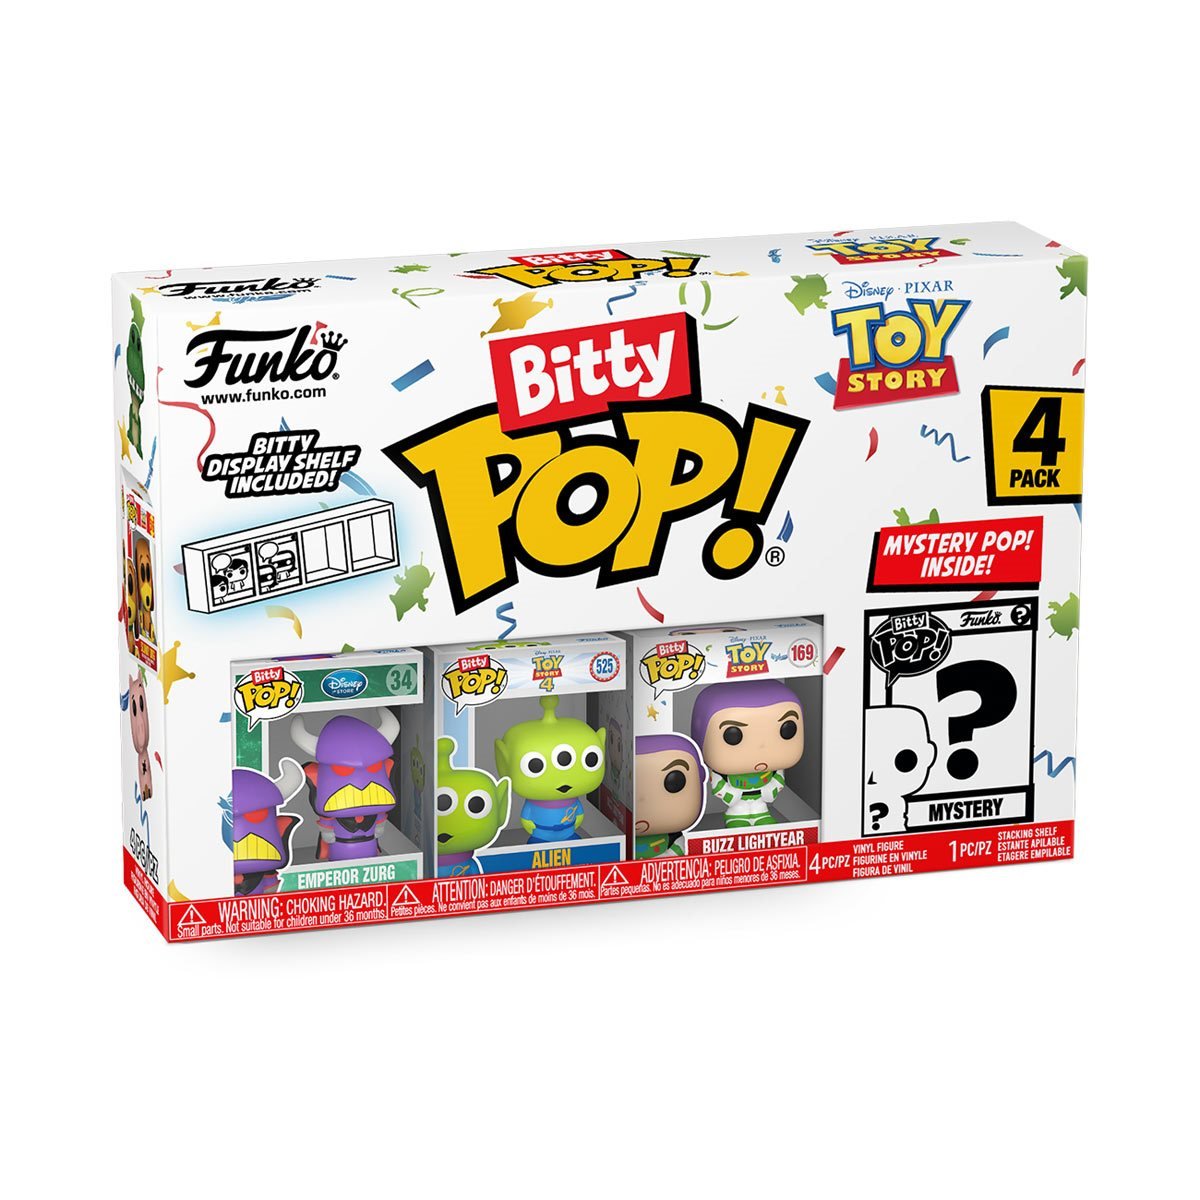 Bitty Pop Toy Story Buzz Lightyear 4pk